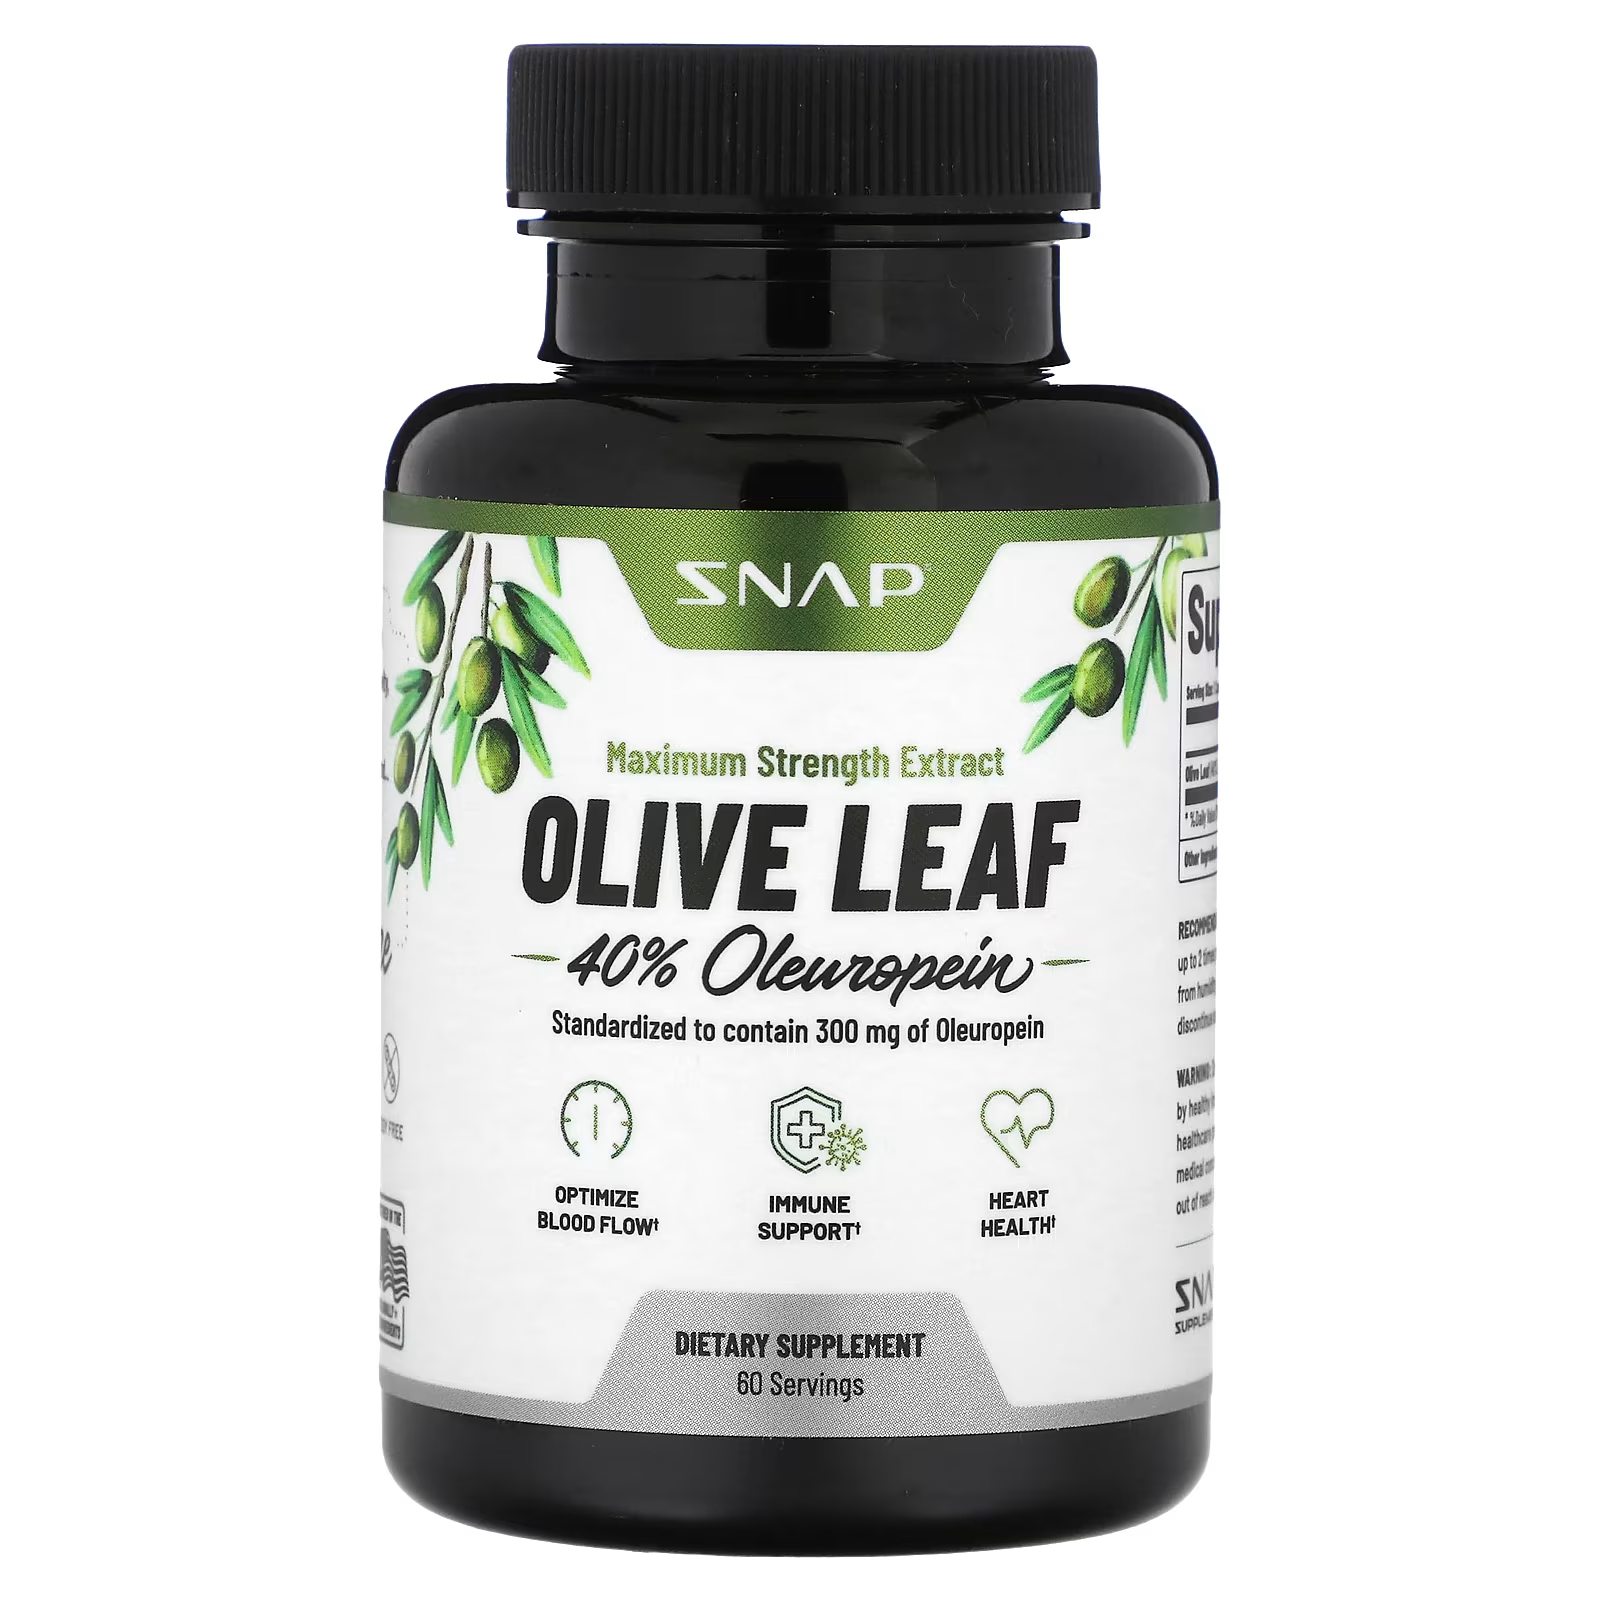 Пищевая добавка Snap Supplements Olive Leaf максимальная сила, 60 капсул пищевая добавка snap supplements olive leaf максимальная сила 60 капсул